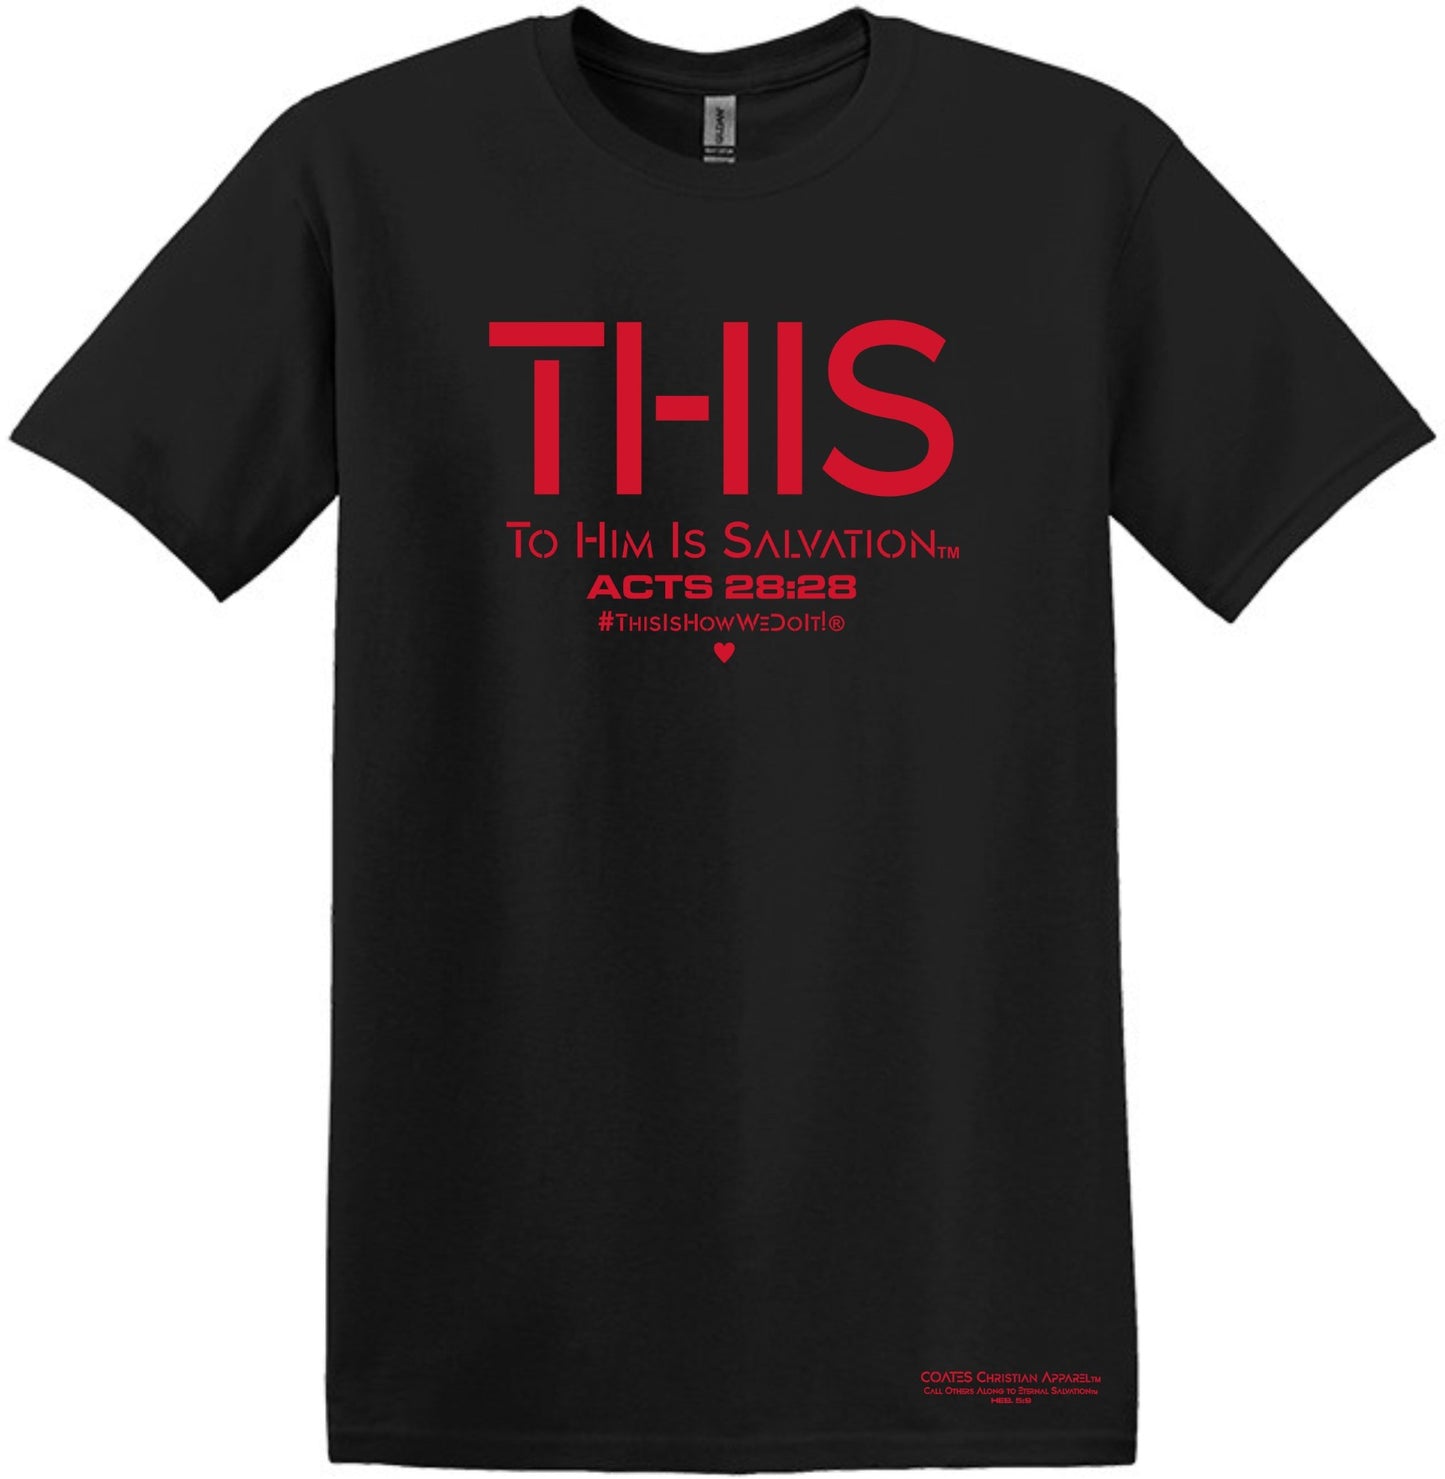 T.H.I.S® To Him Is Salvation® This Is How We Do It® T-Shirt!